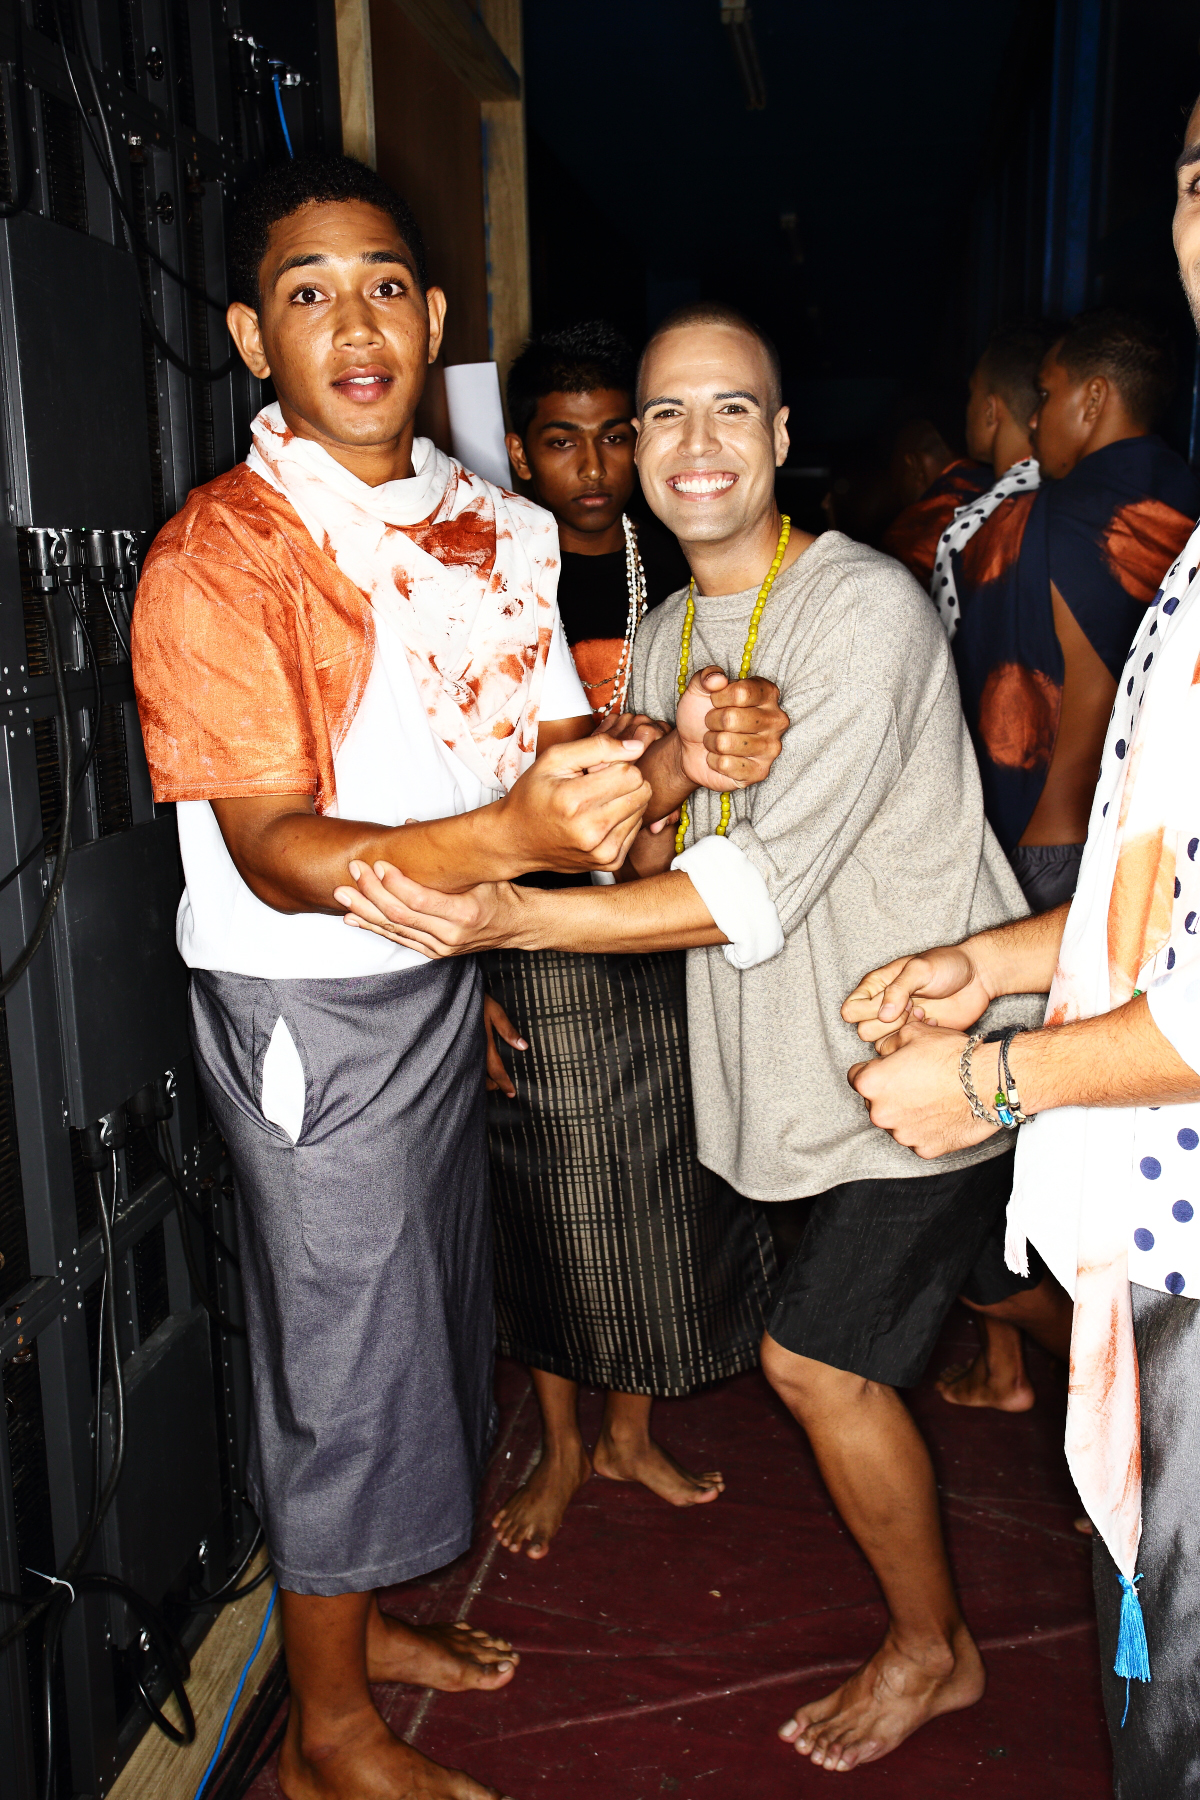 Huudaverti Man Fashion Show Suva, Fiji Backstage